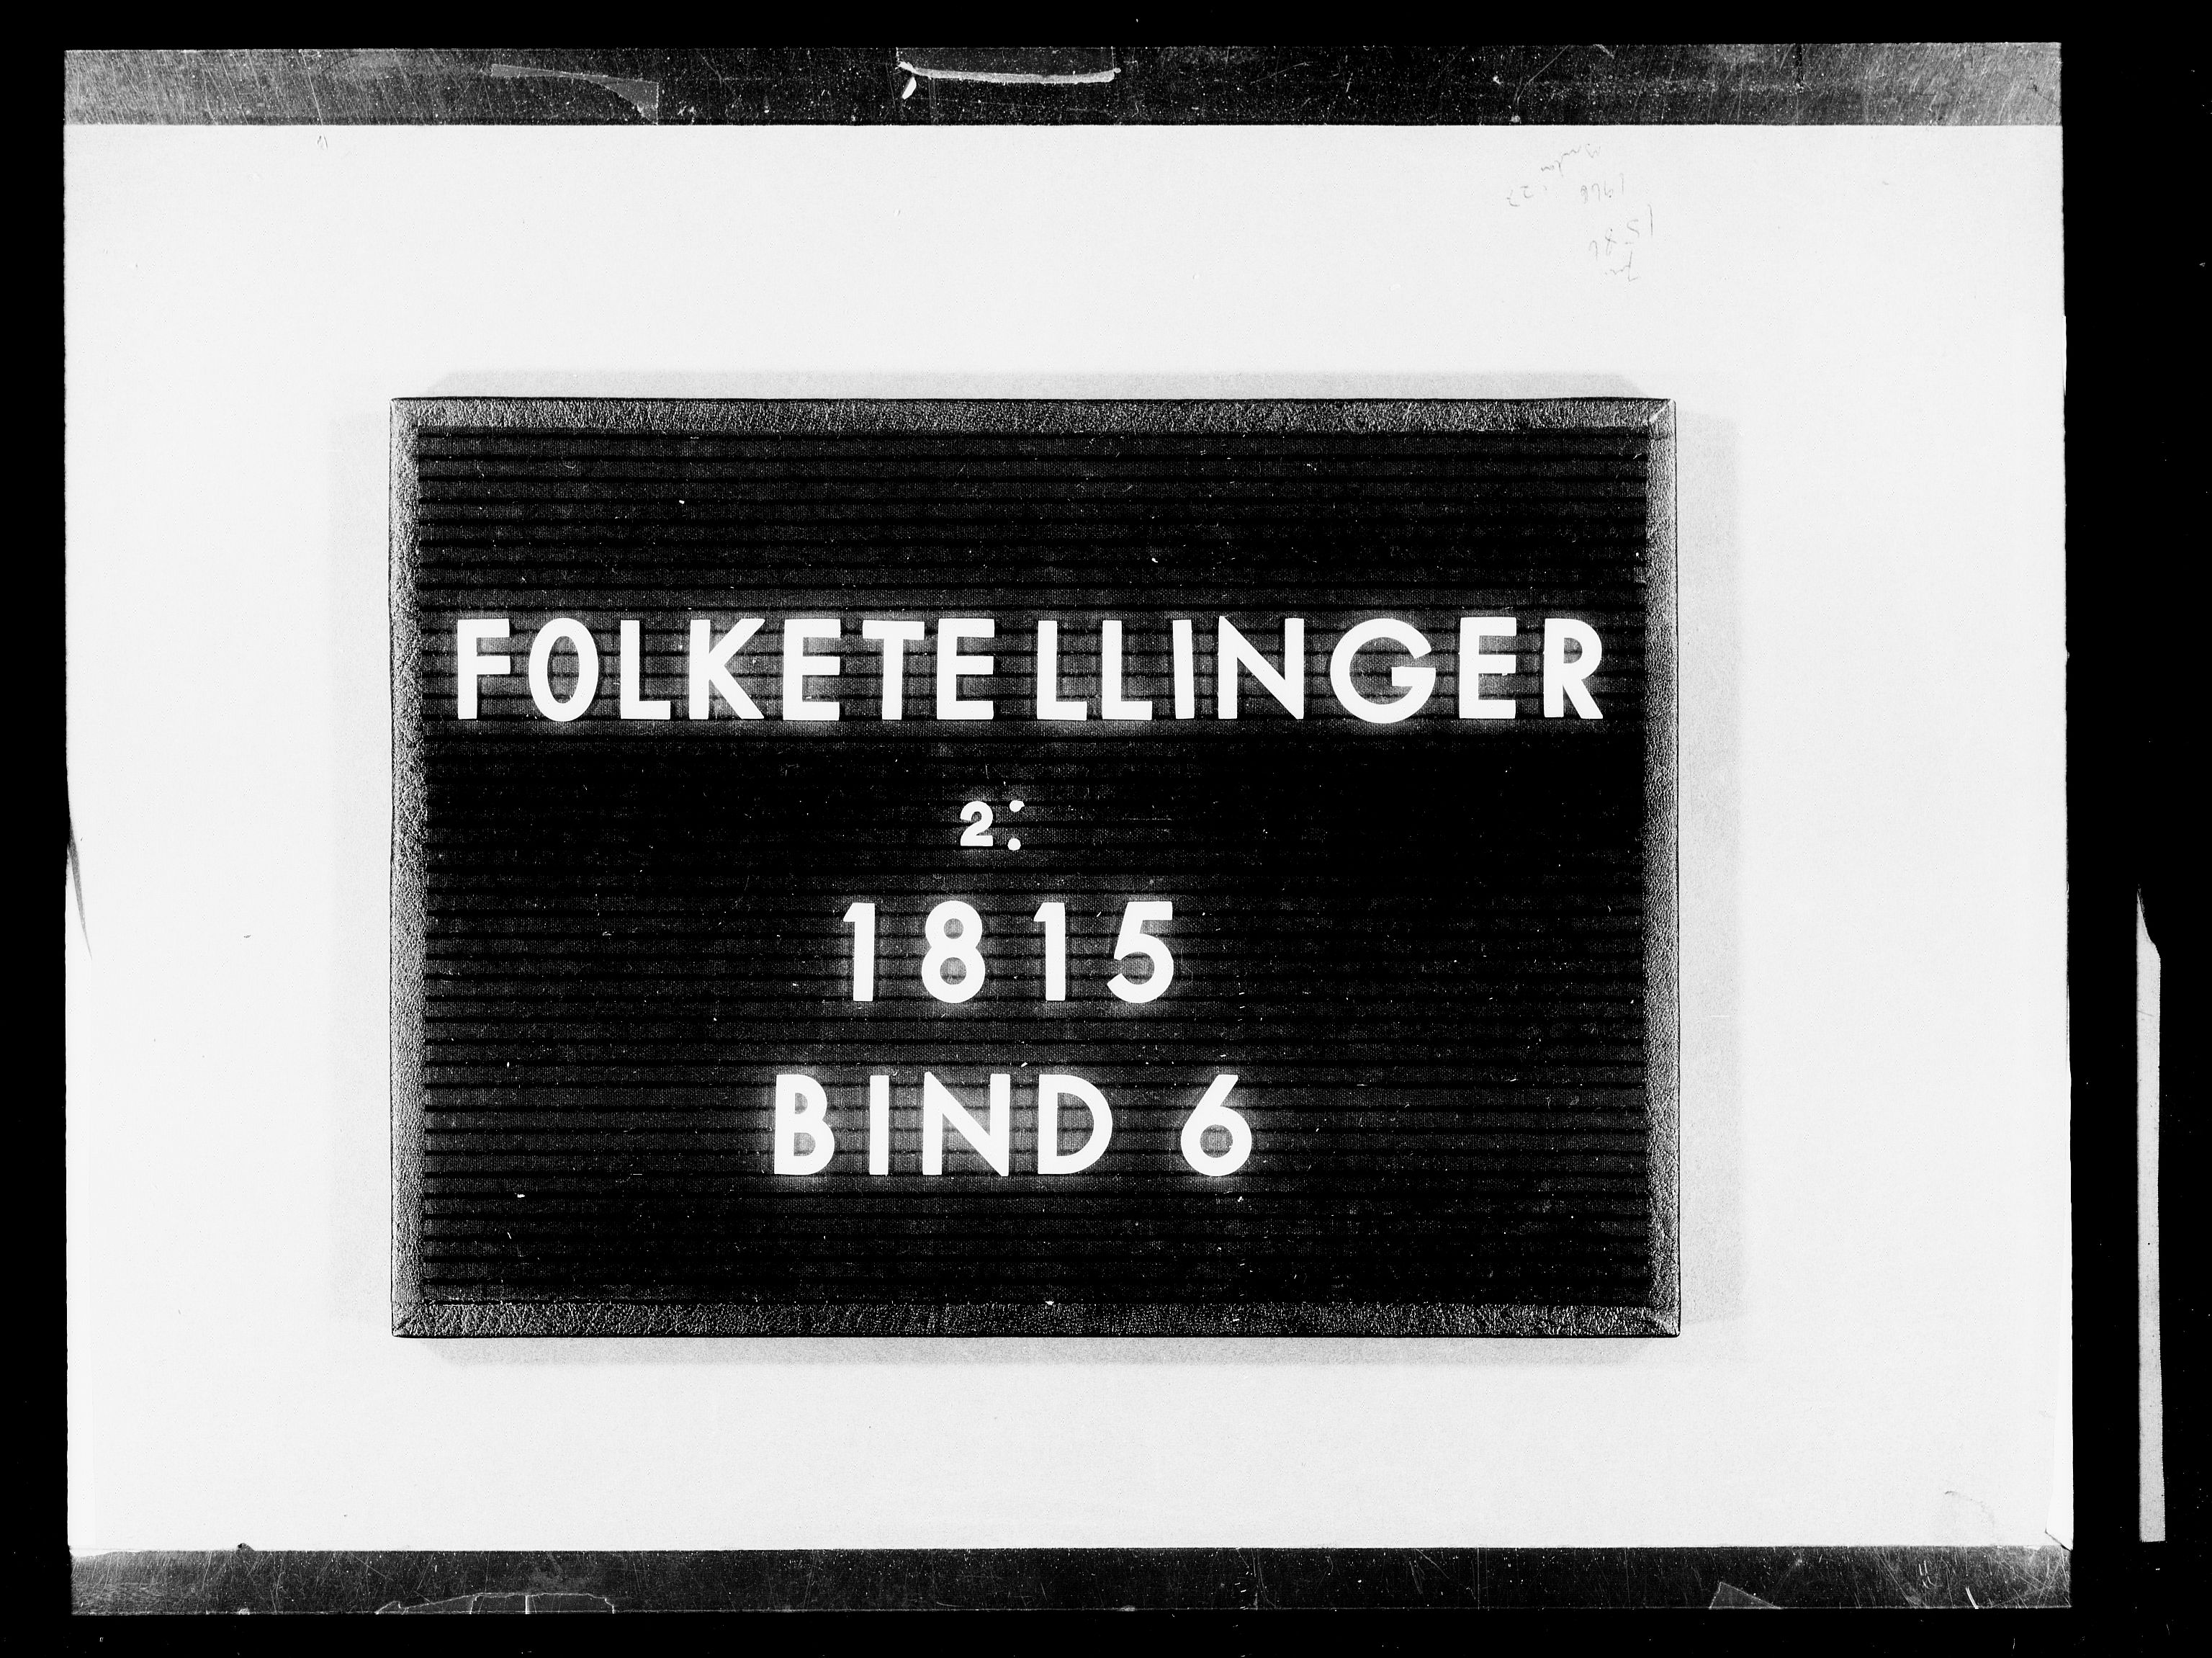 RA, Folketellingen 1815, bind 6: Folkemengdens bevegelse i Akershus stift og Kristiansand stift, 1815